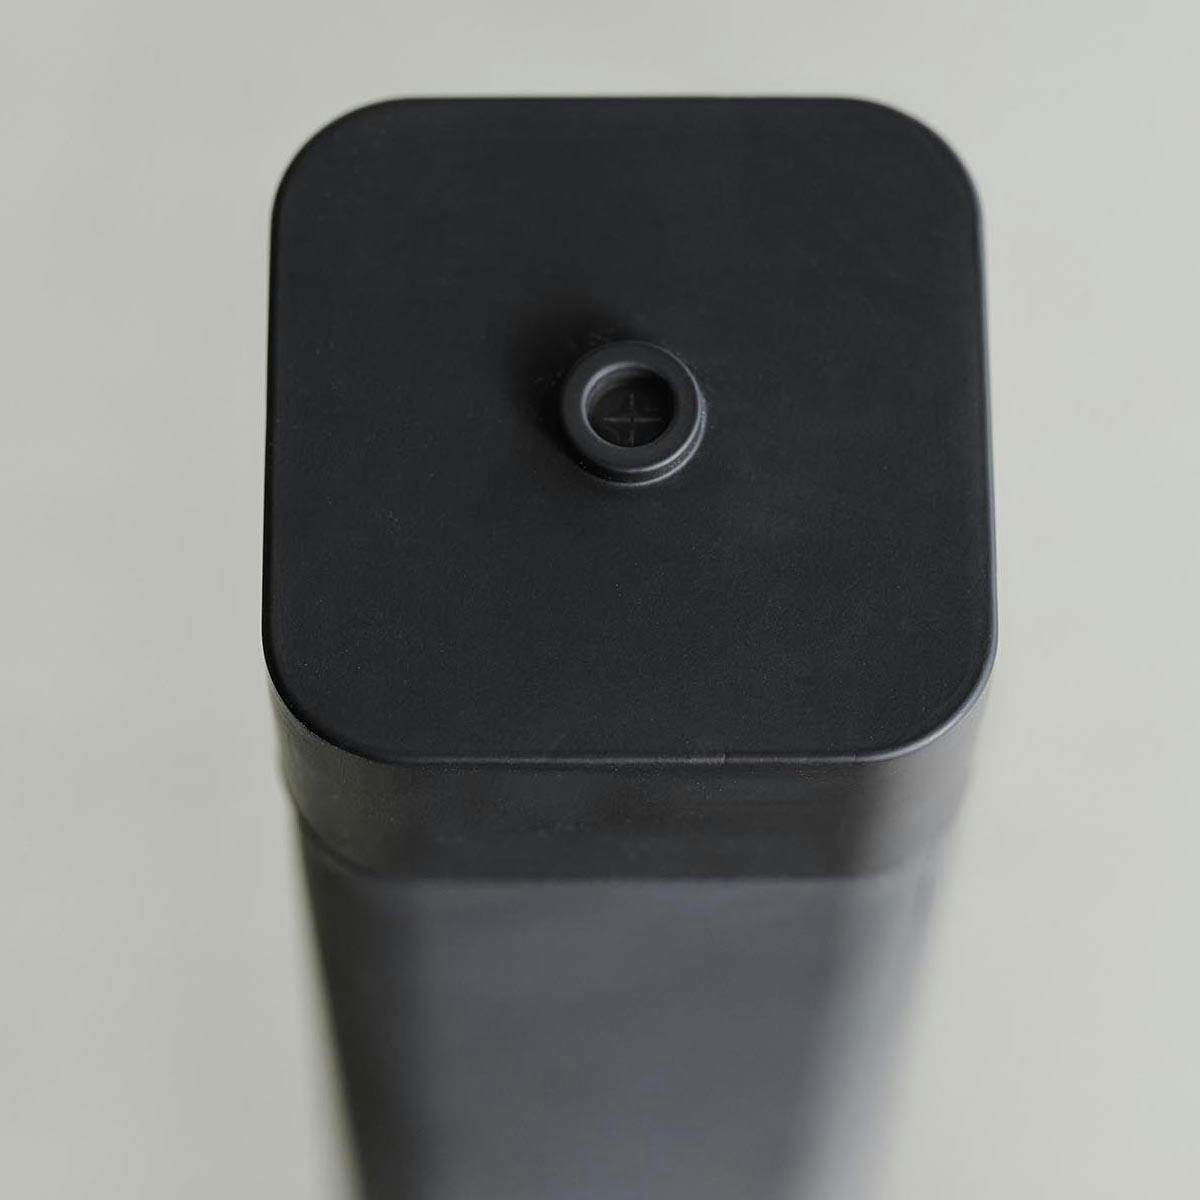 シリコーン食器用洗剤詰め替えボトル タワーのイメージ